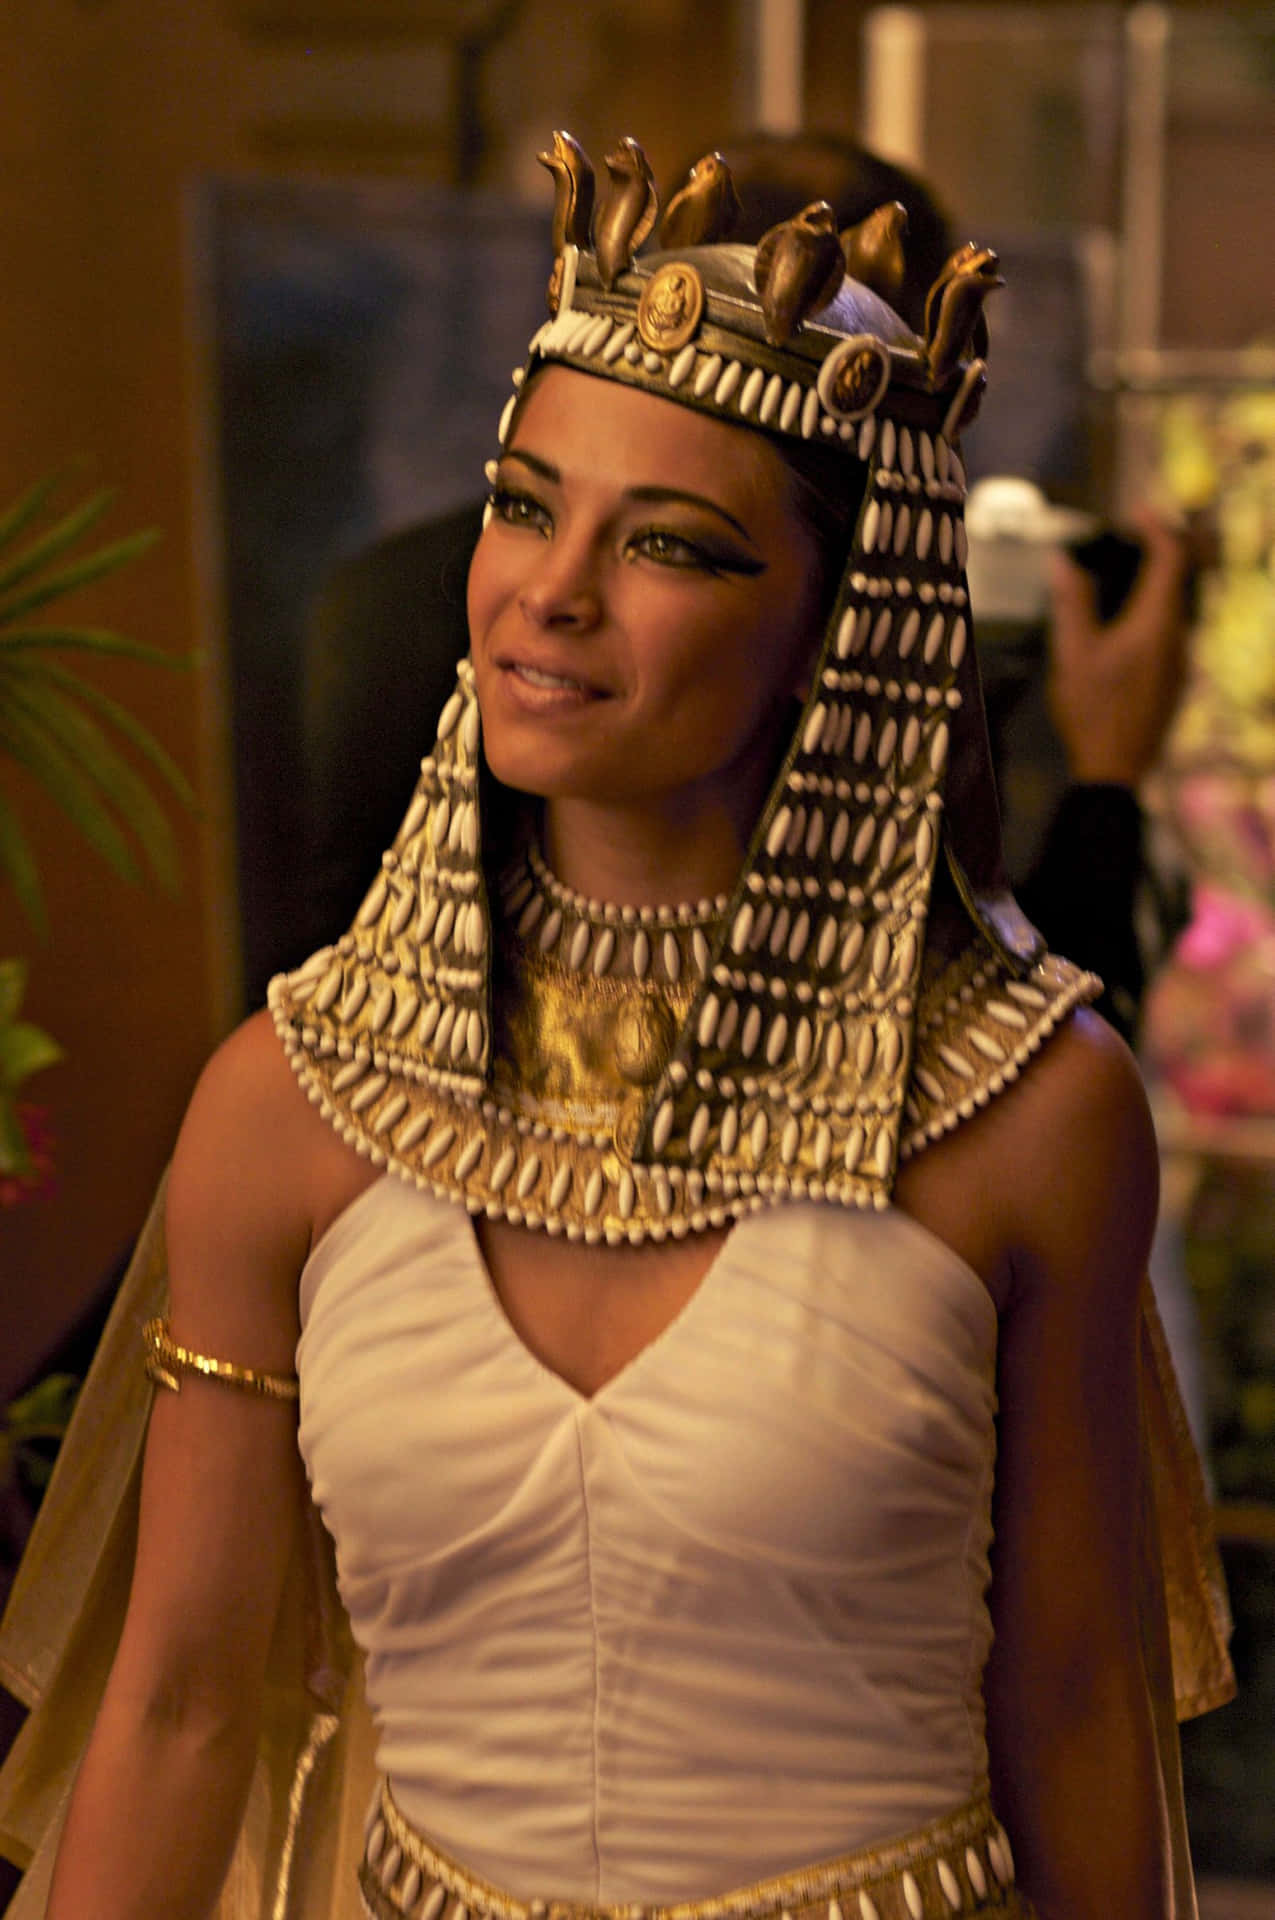 The Last Pharaoh of Egypt, Cleopatra